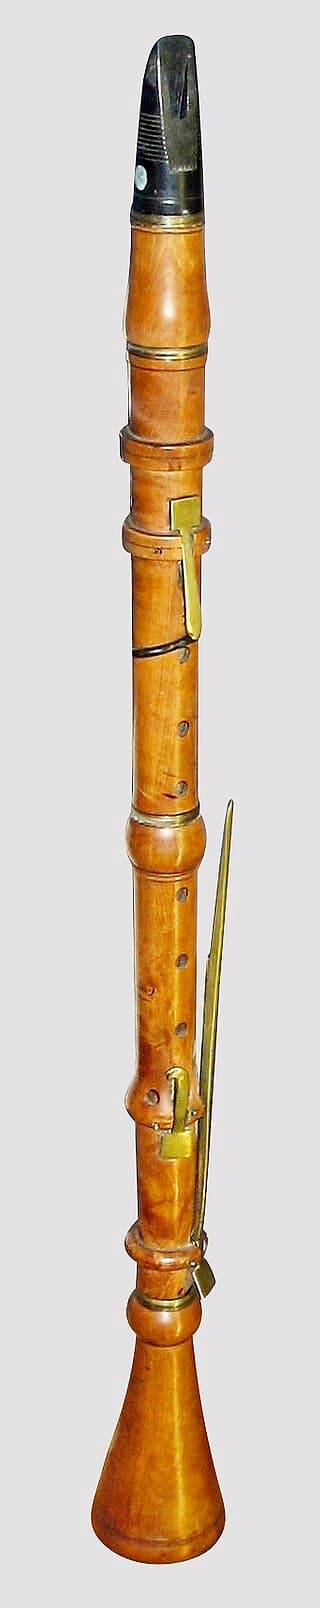 4-Key clarinet, ca. 1760